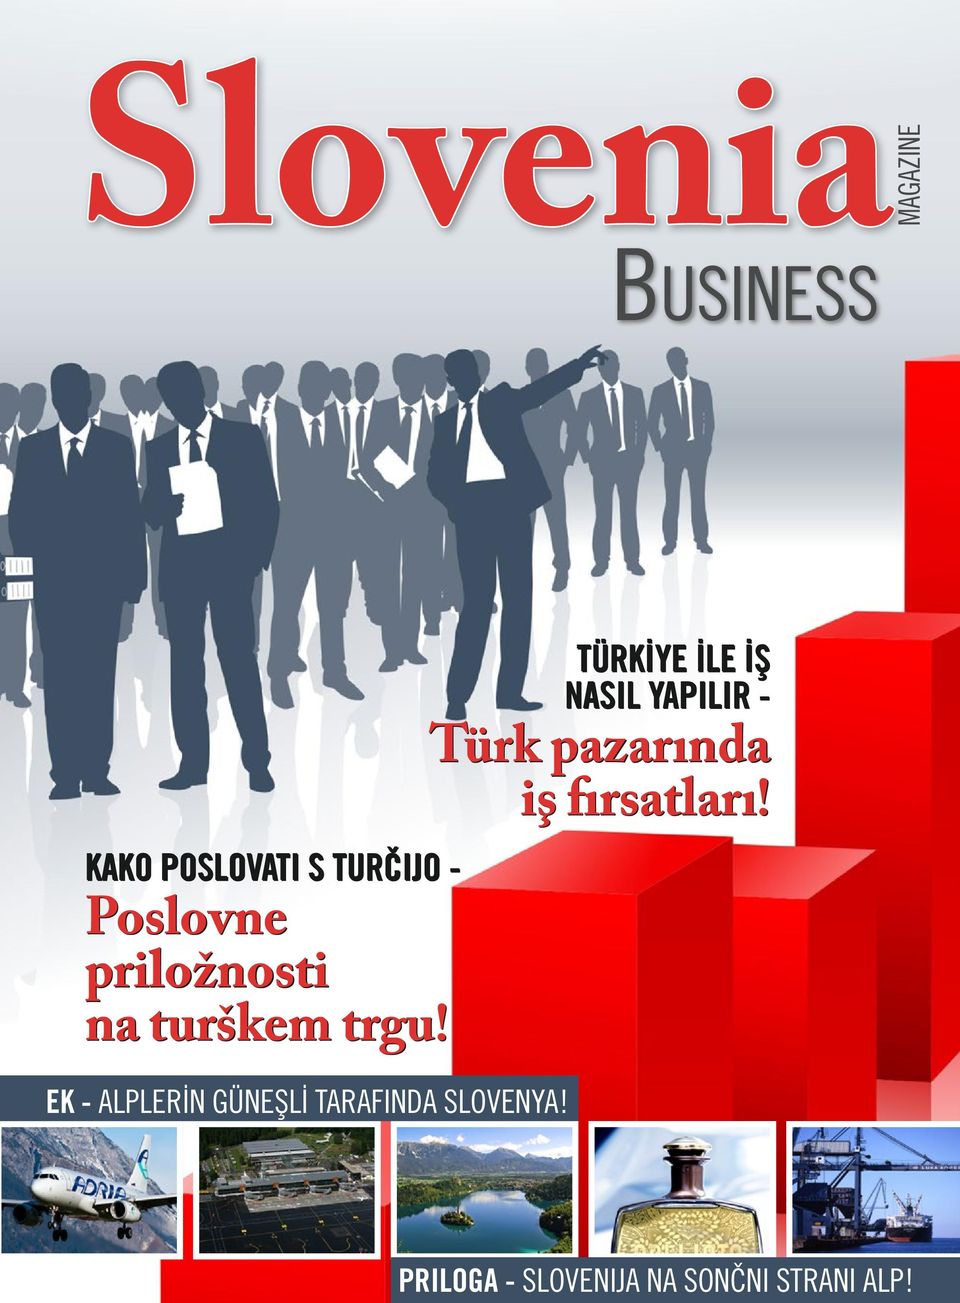 Poslovne priložnosti na turškem trgu!